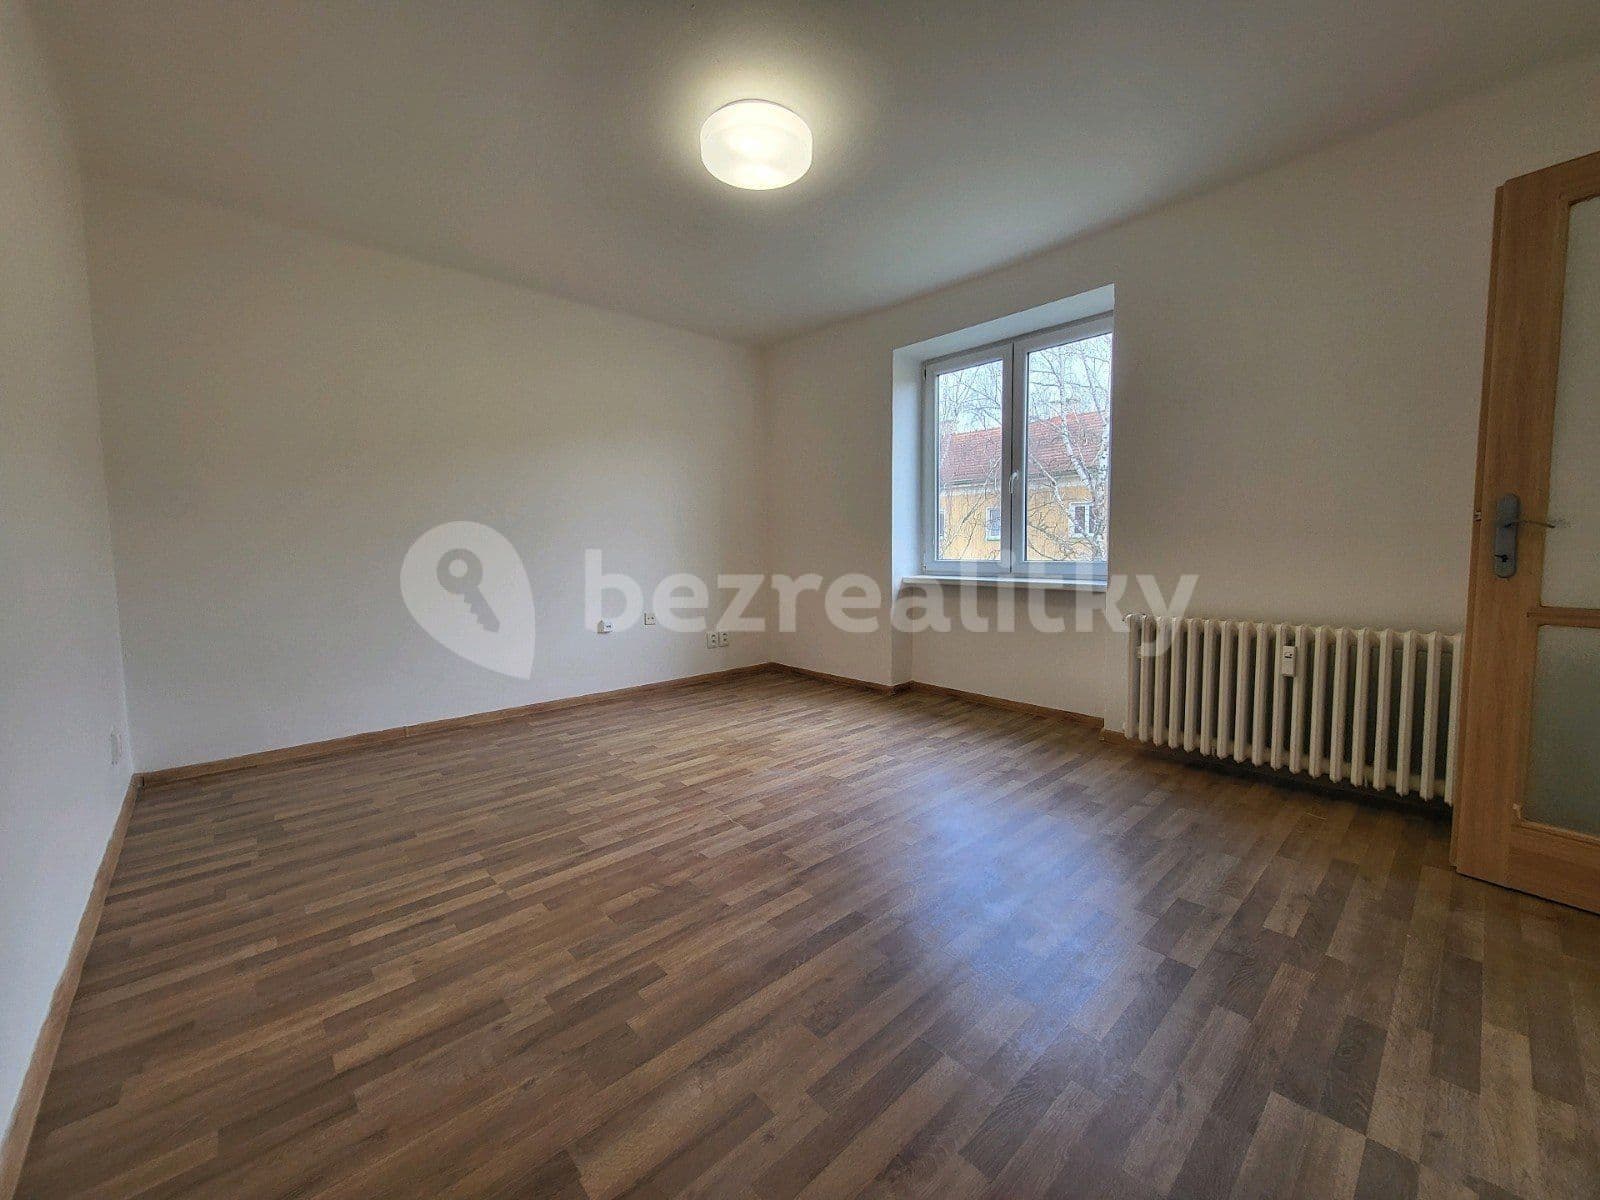 2 bedroom flat to rent, 60 m², Olbrachtova, Havířov, Moravskoslezský Region